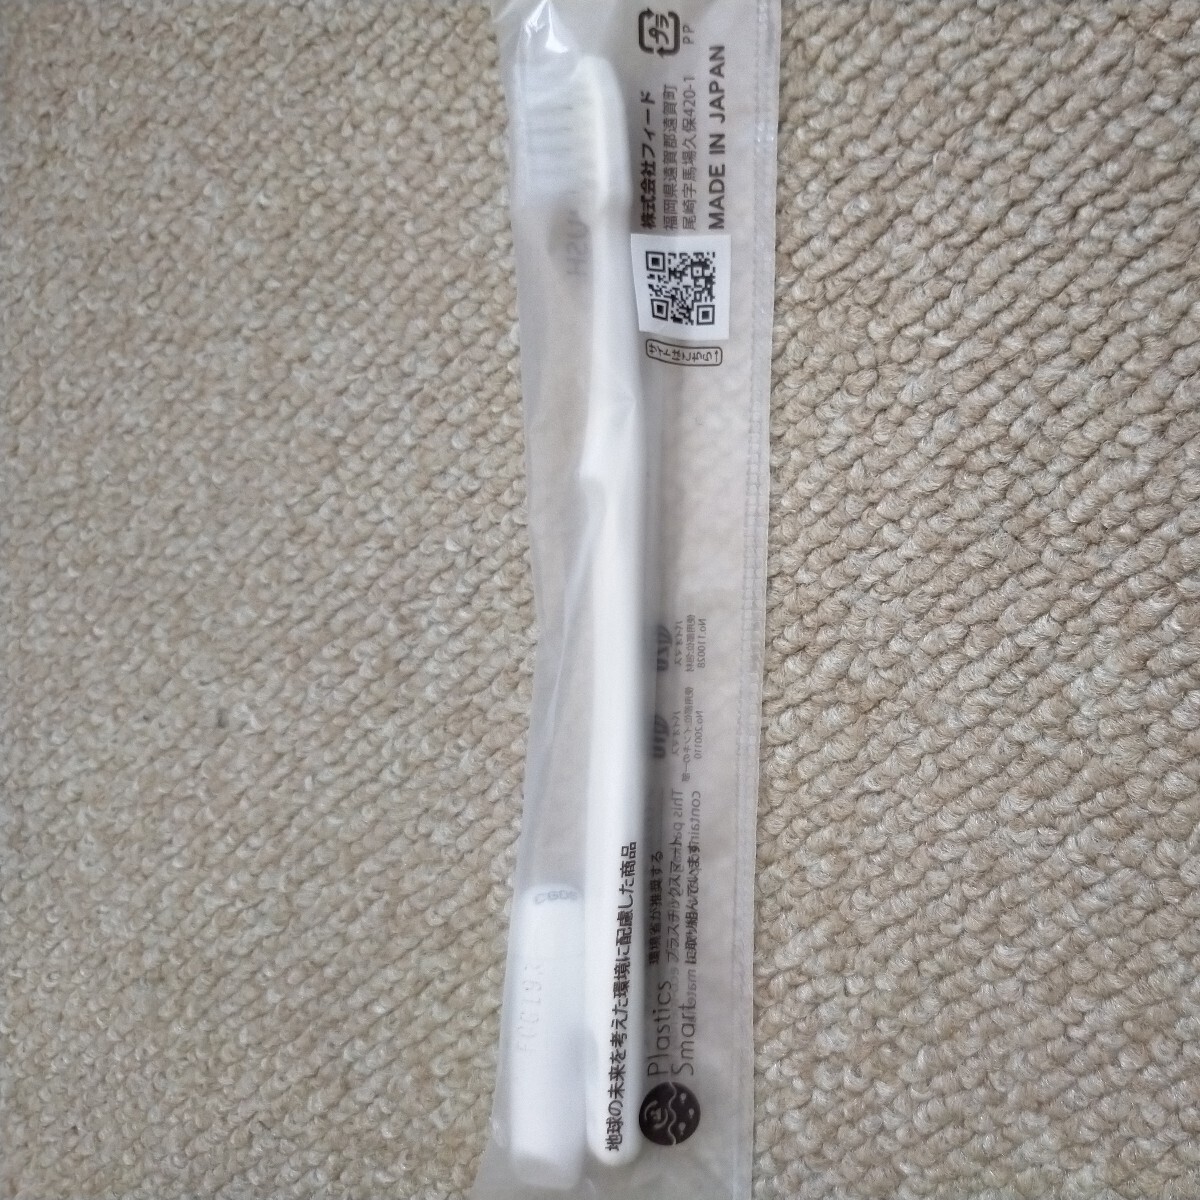  зубная щетка отель amenity 80 шт. комплект одноразовый сделано в Японии 